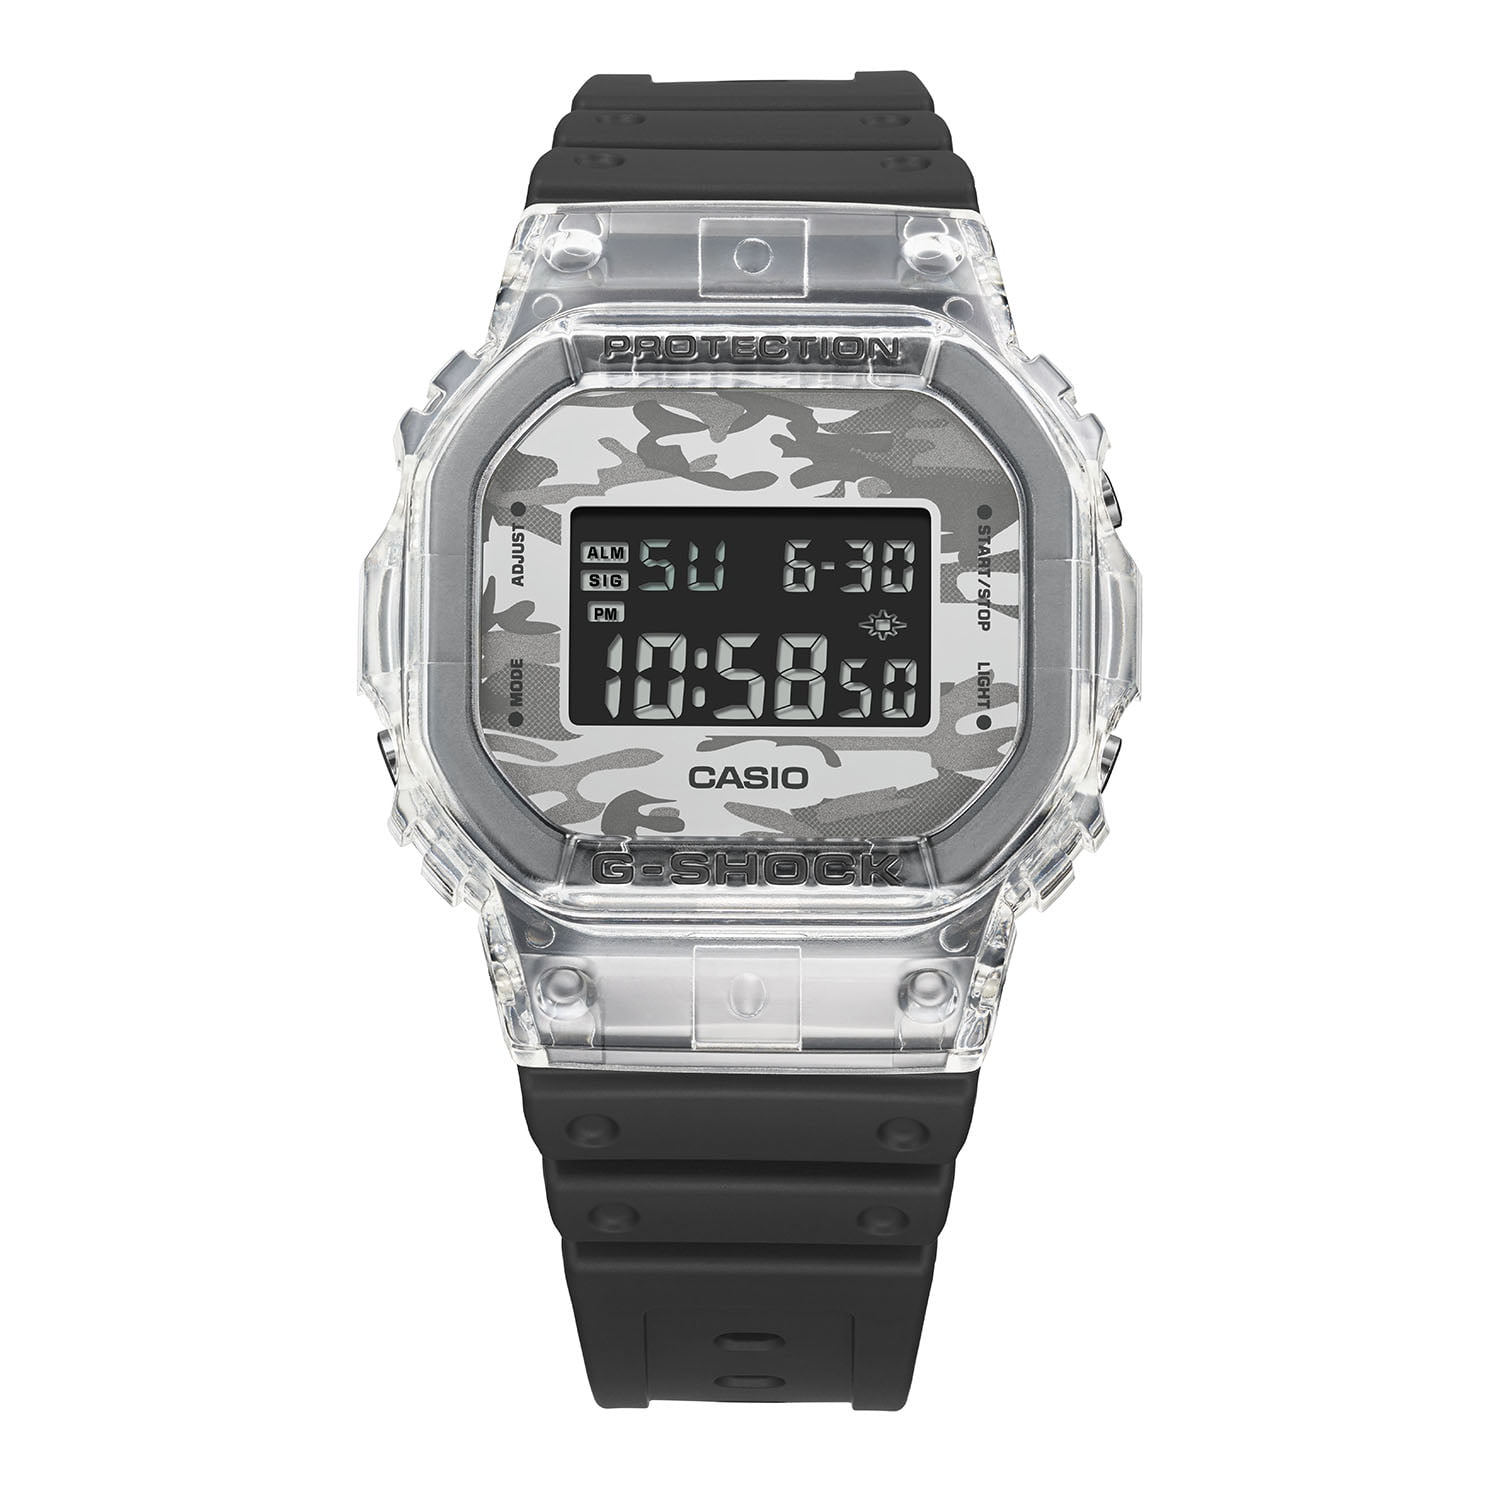 Đồng hồ G-Shock Origin